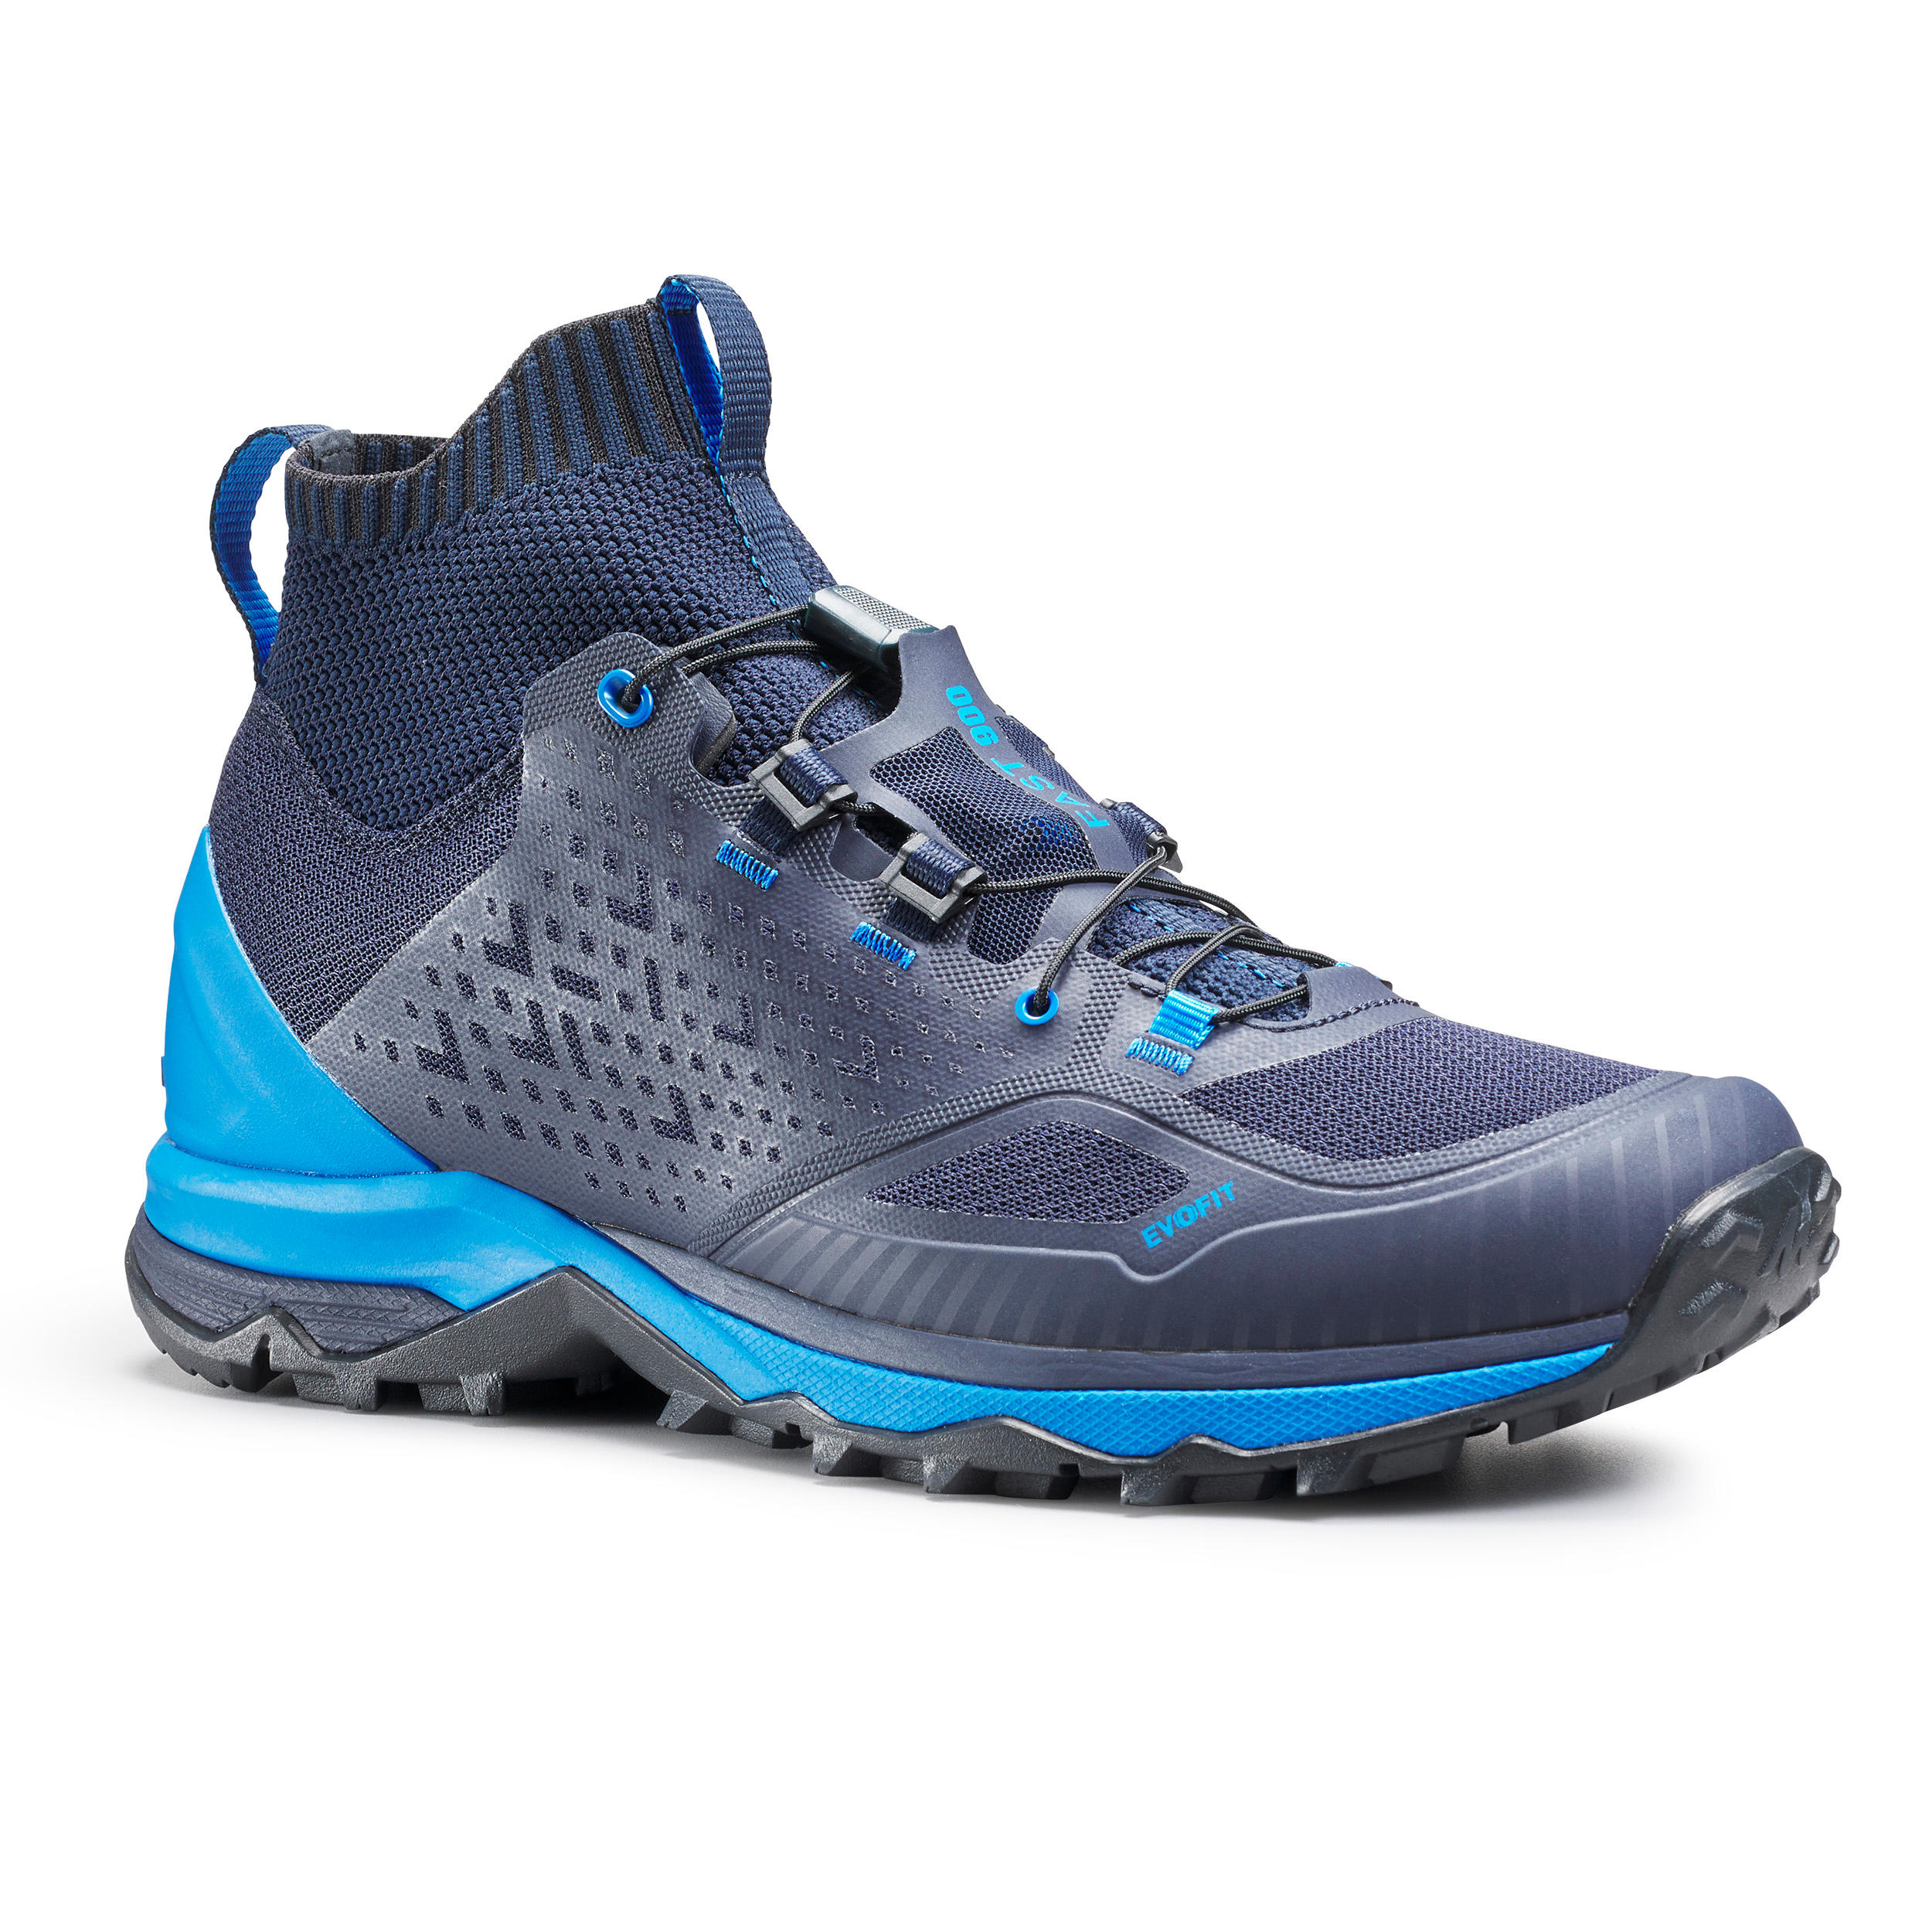 QUECHUA Men's Fast Hiking Shoe FH900 - blue